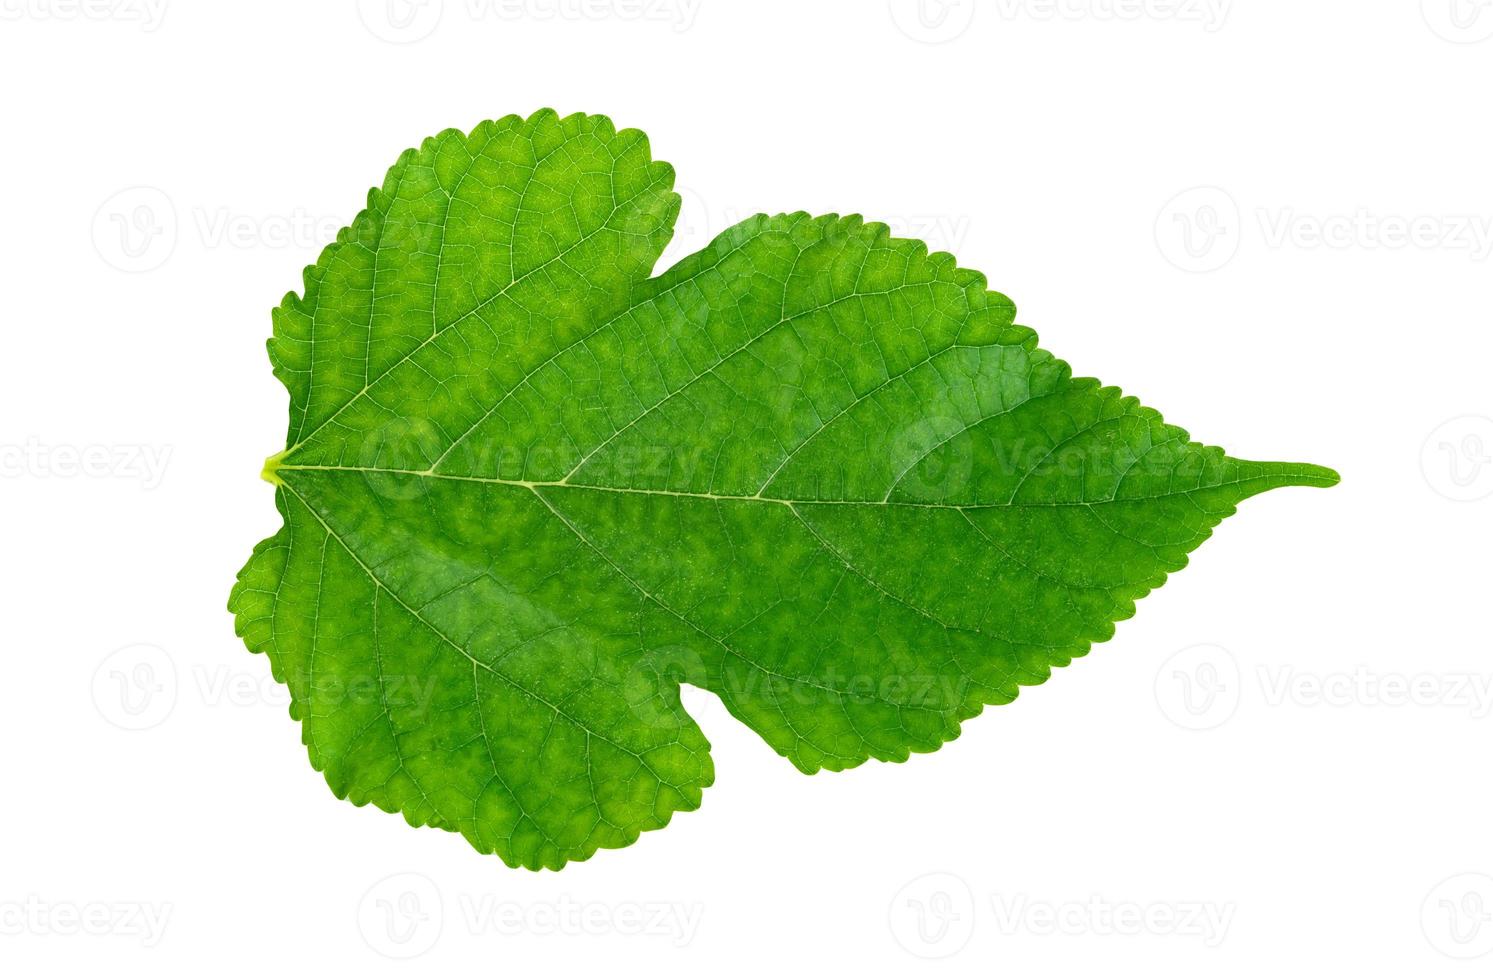 folhagem de amoreira, padrão de folhas verdes de plantas tropicais isoladas no fundo branco foto